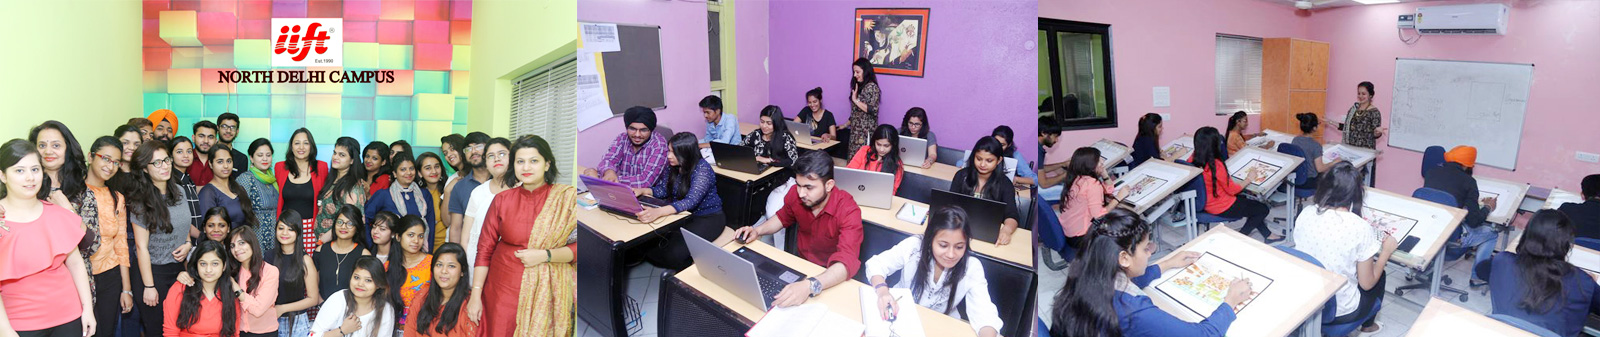 event management academy in delhi
